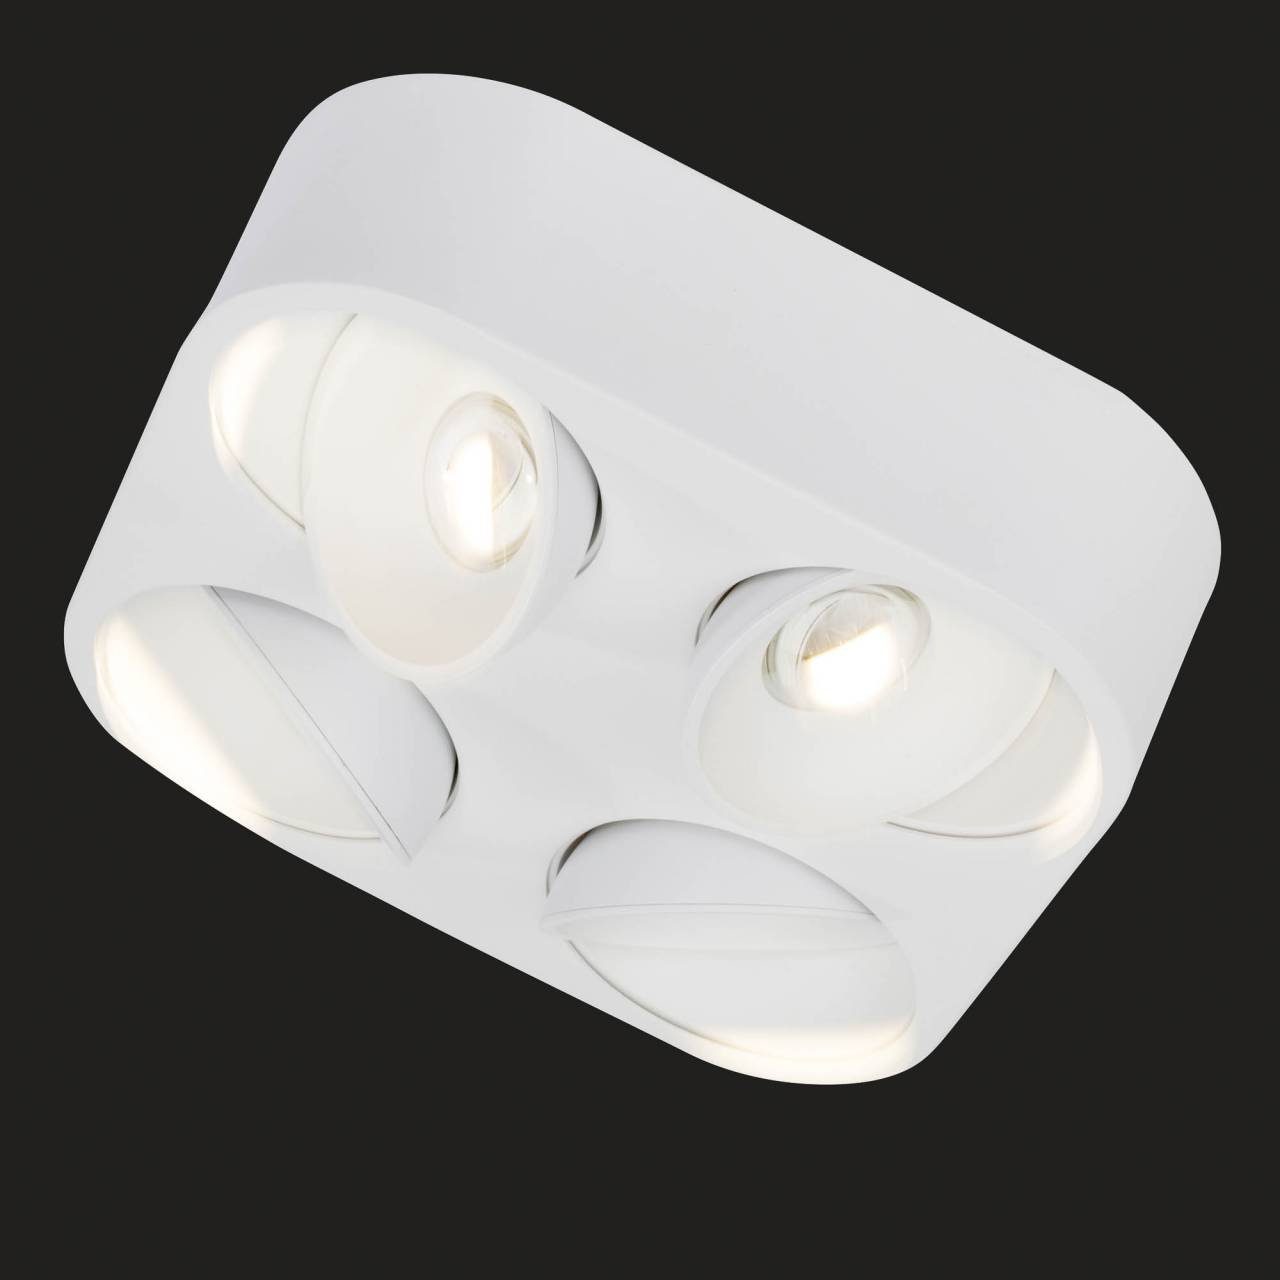 AEG LED Deckenleuchte Leca, LED 26 cm, 26 Alu-Druckguss, 3600 lm, wechselbar, warmweiß, weiß x Warmweiß, schwenkbar